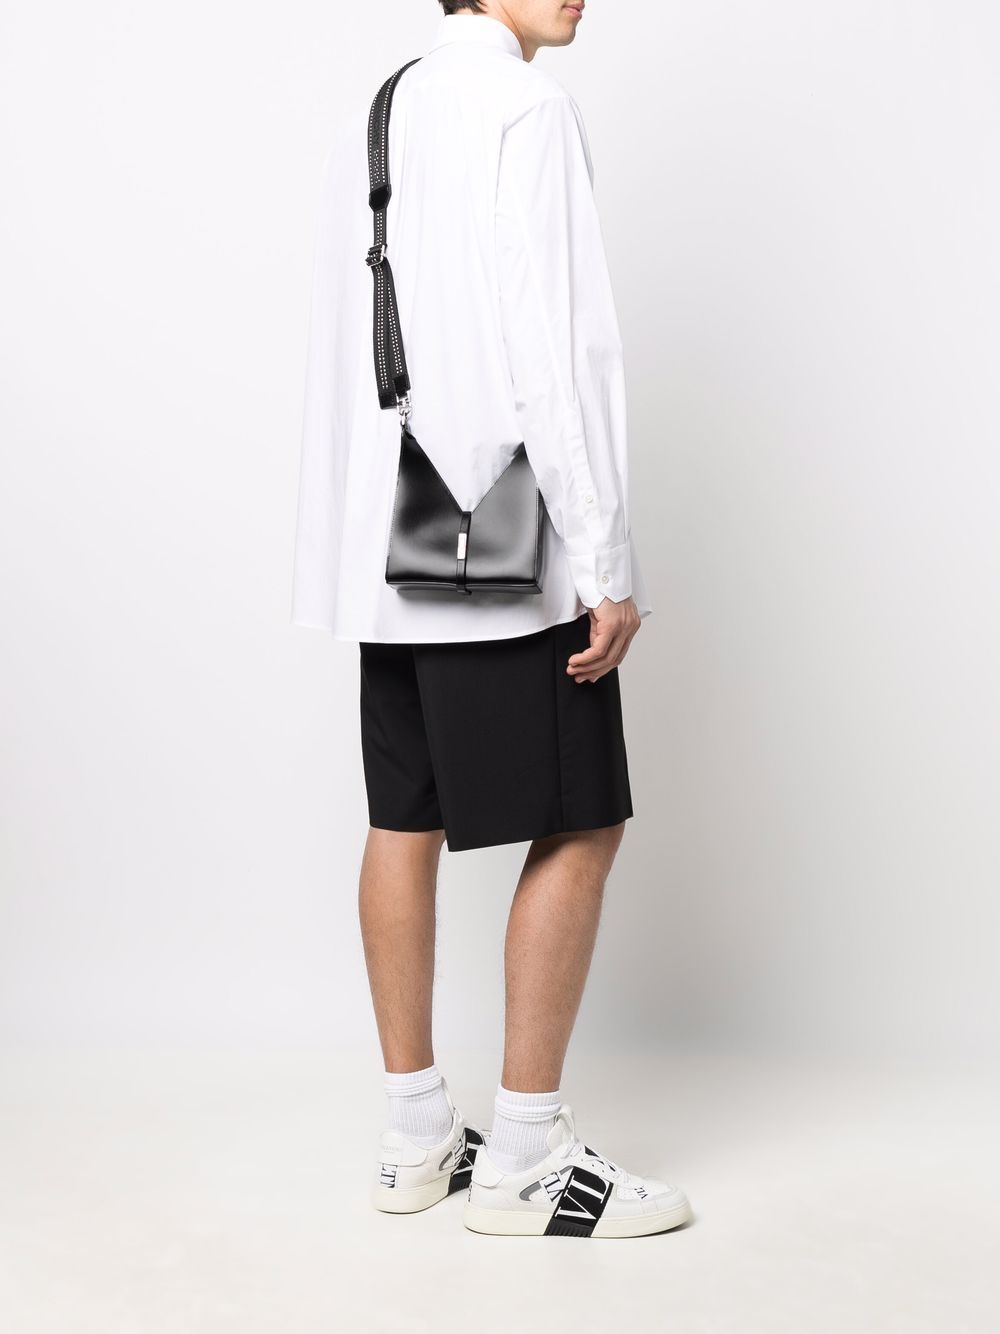 фото Givenchy маленькая сумка на плечо cut out